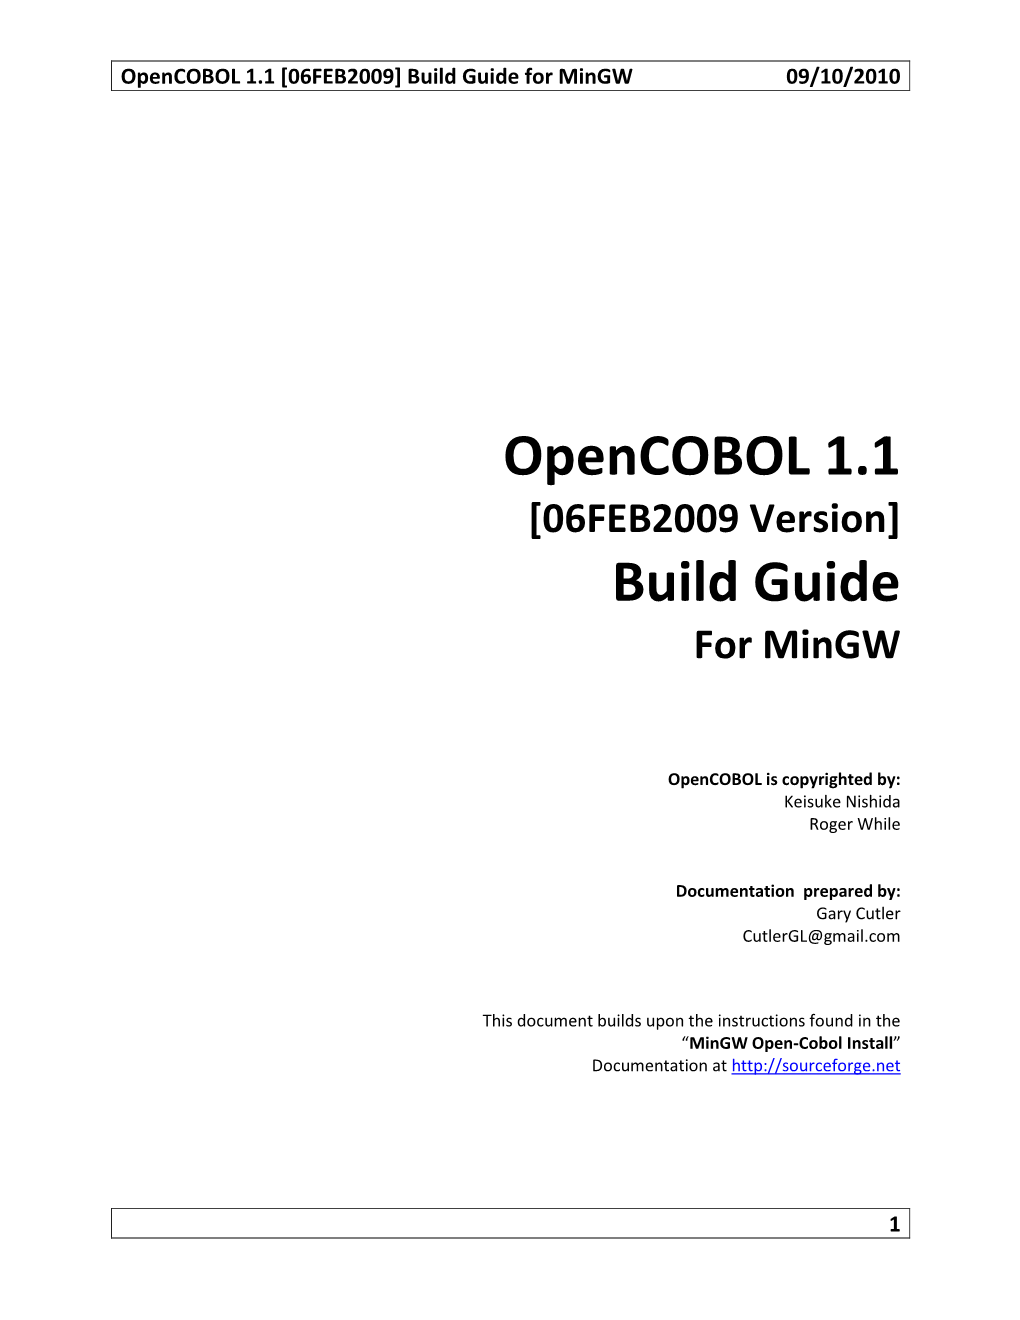 Opencobol 1.1 Build Guide